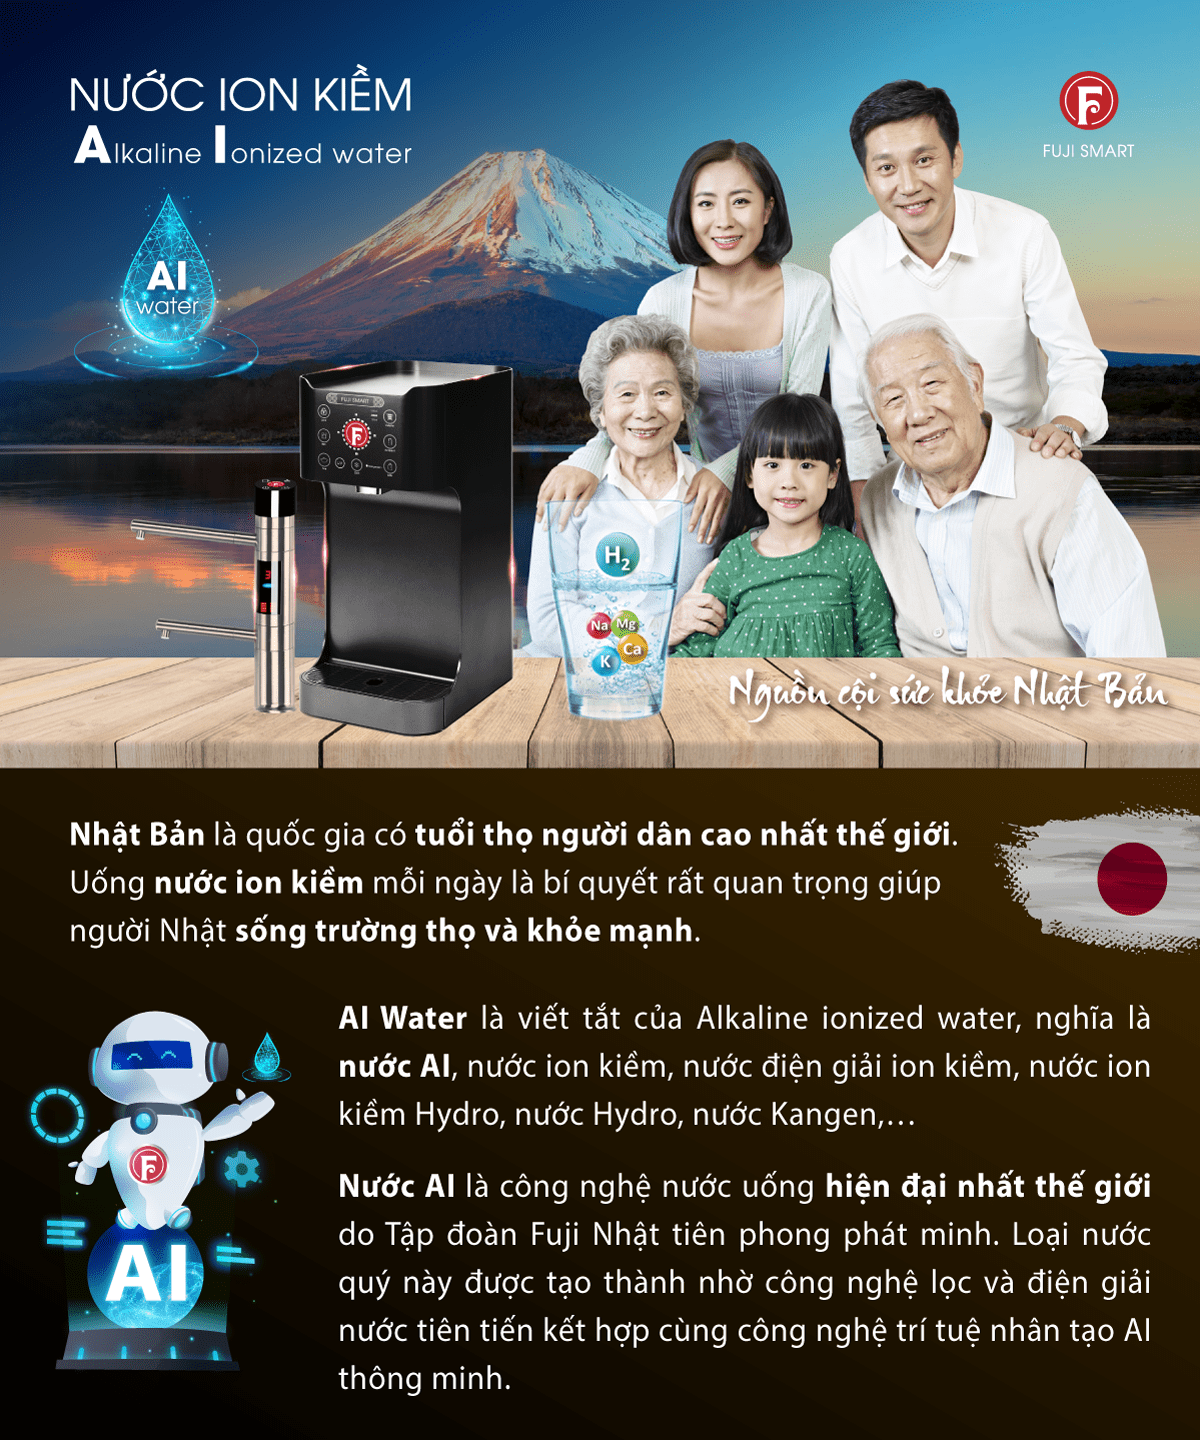 Fuji Smart U60 HC - bí quyết trường thọ của người Nhật 